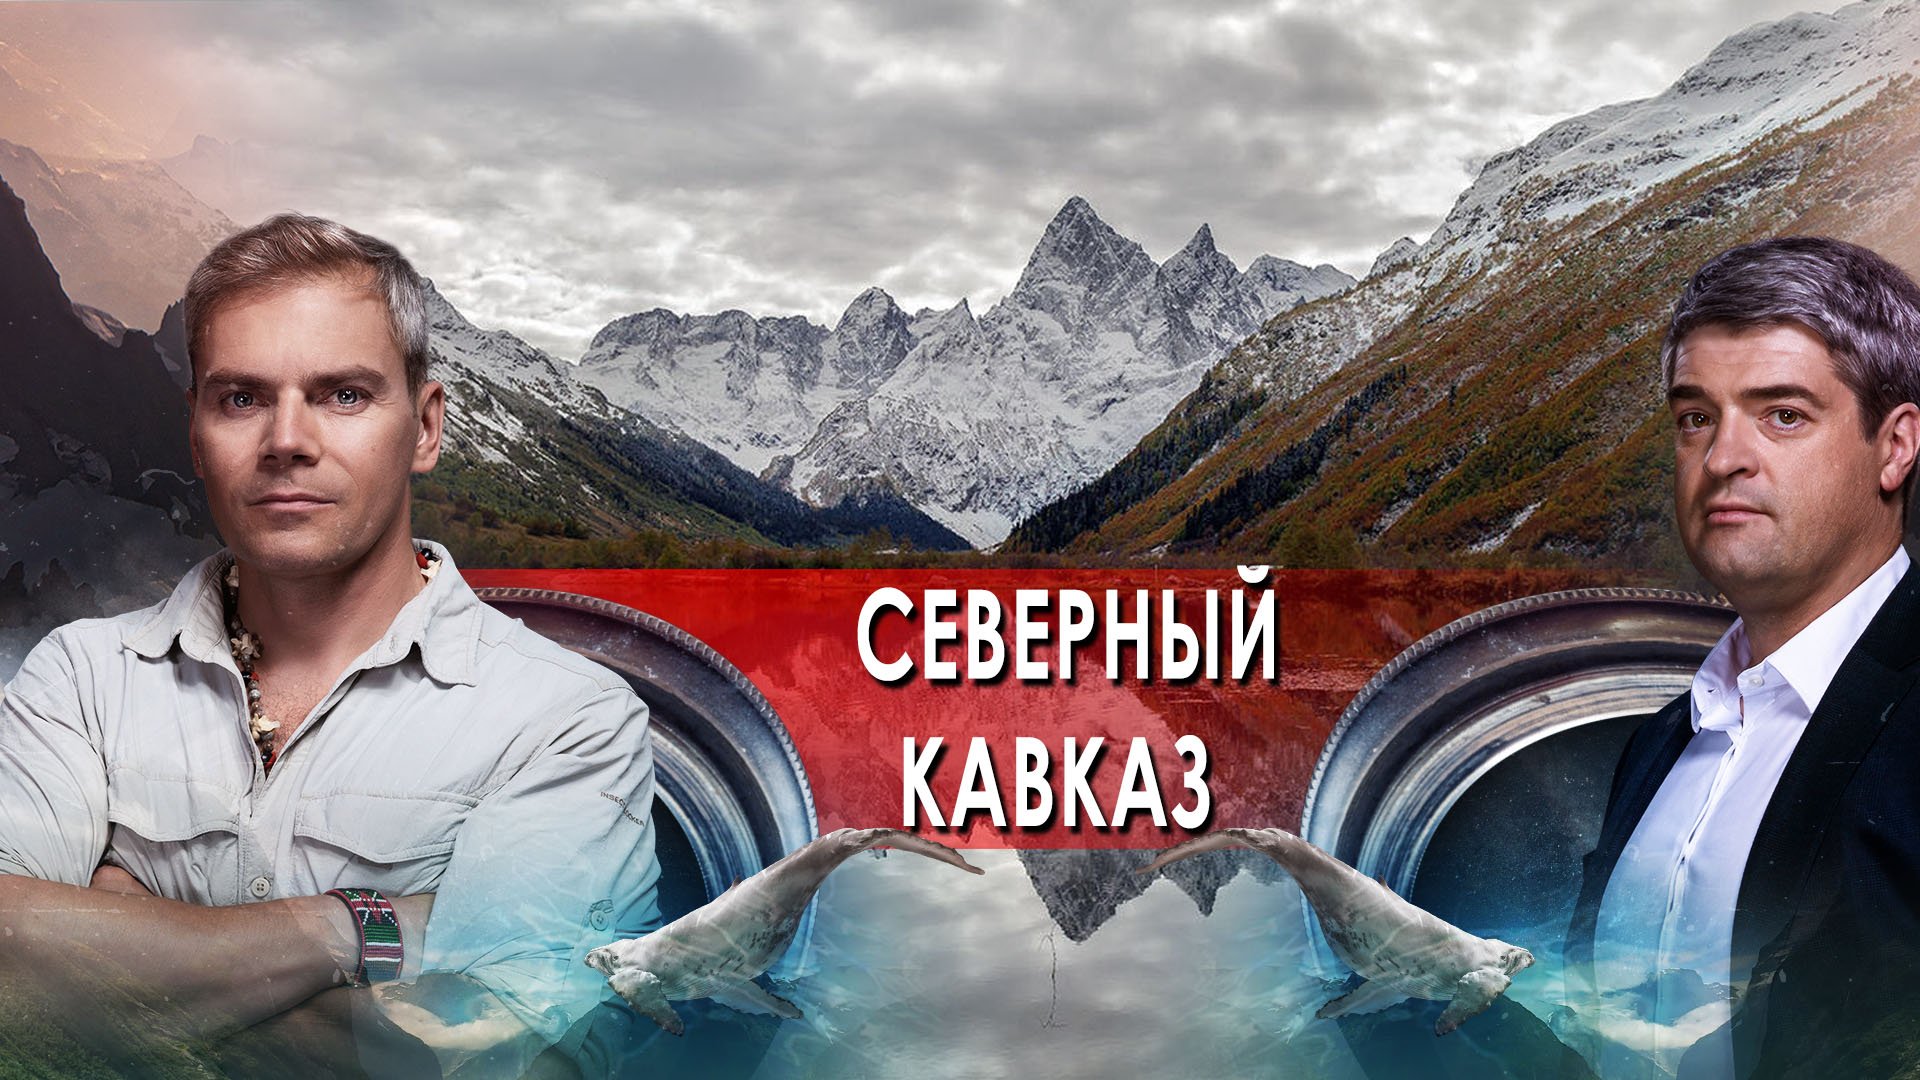 Северный Кавказ (2) — НИИ: Путеводитель